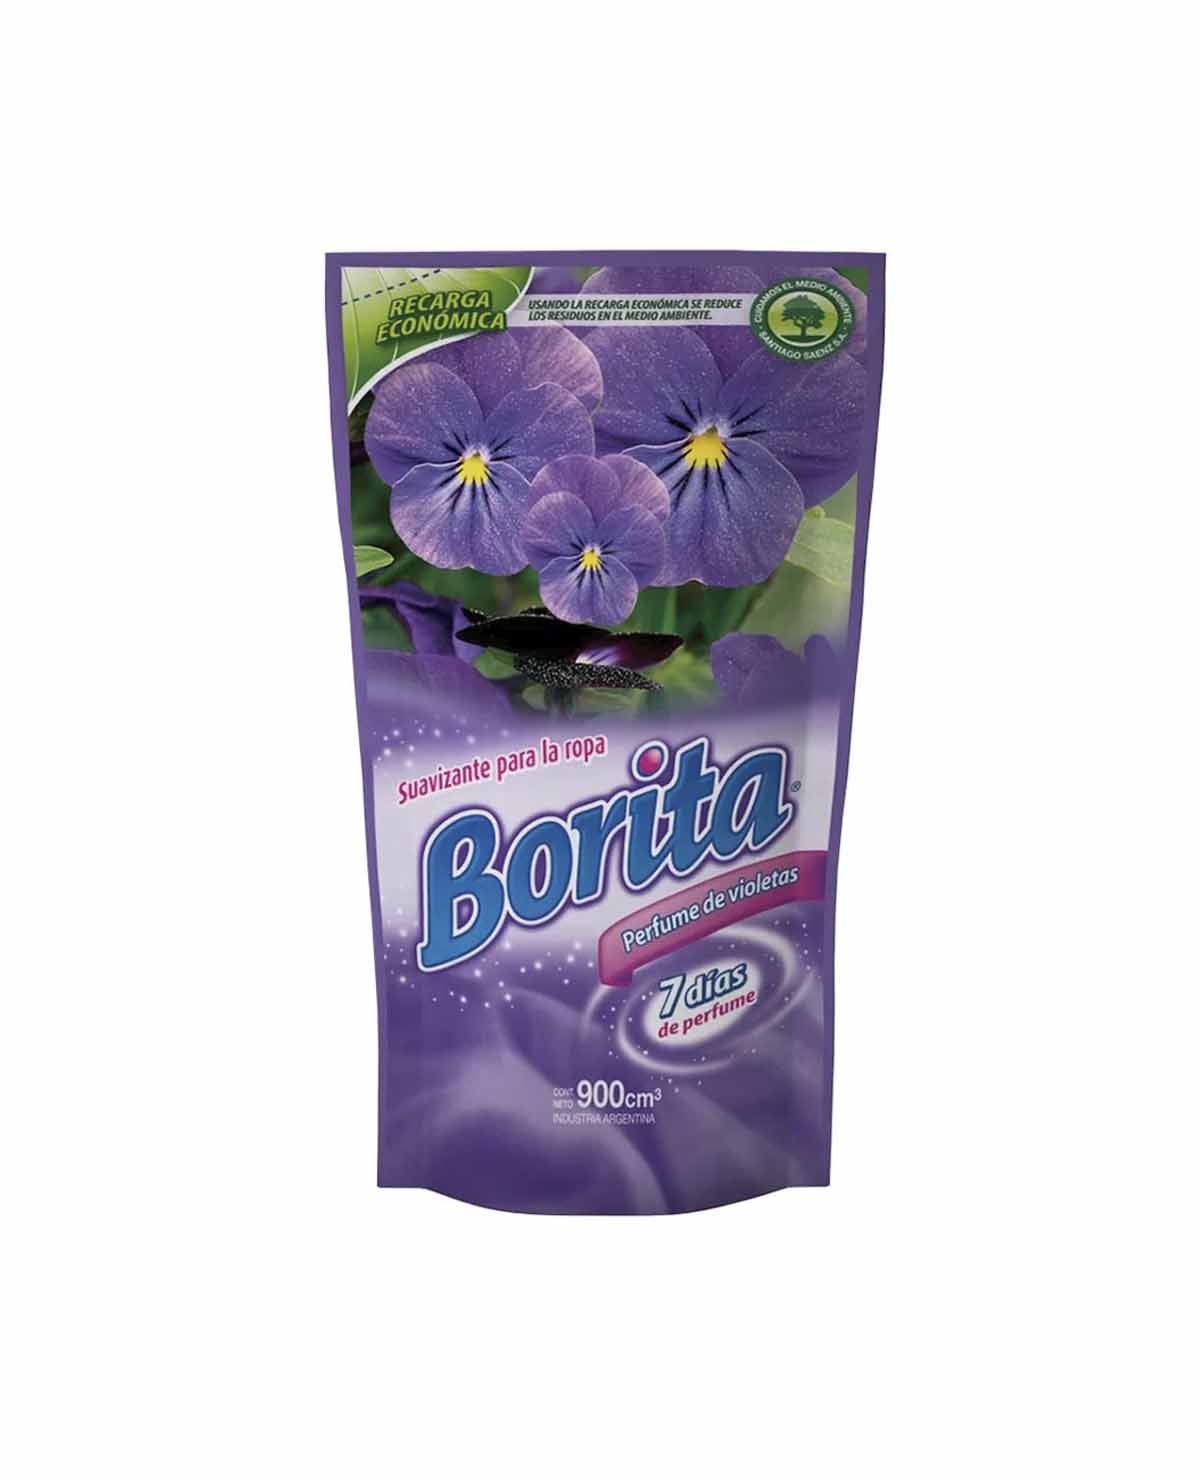 Suavizante Borita Perfume de Violetas x 900 Cm3